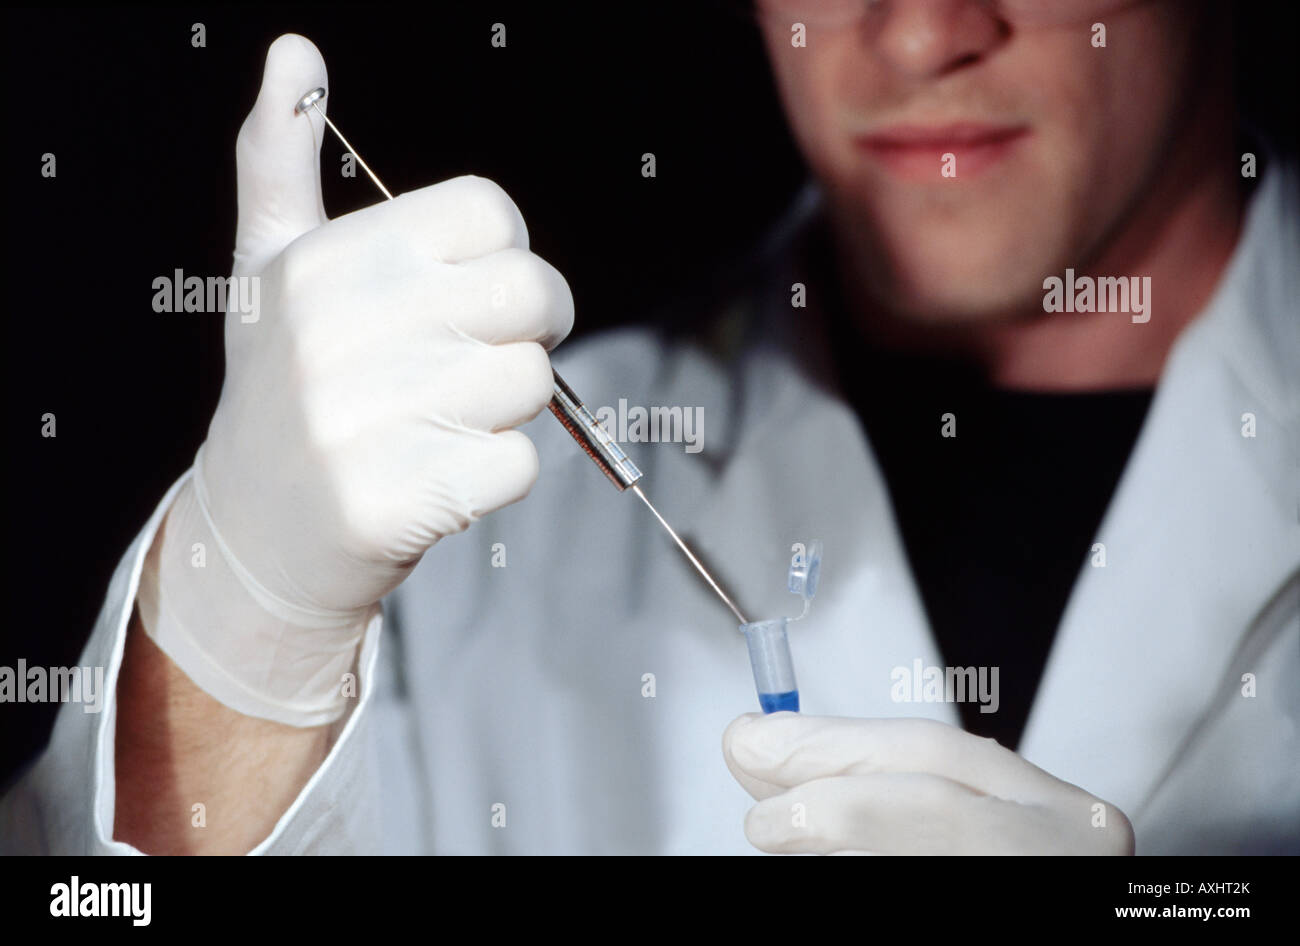 L'extraction de l'ADN d'un échantillon de chercheurs Banque D'Images